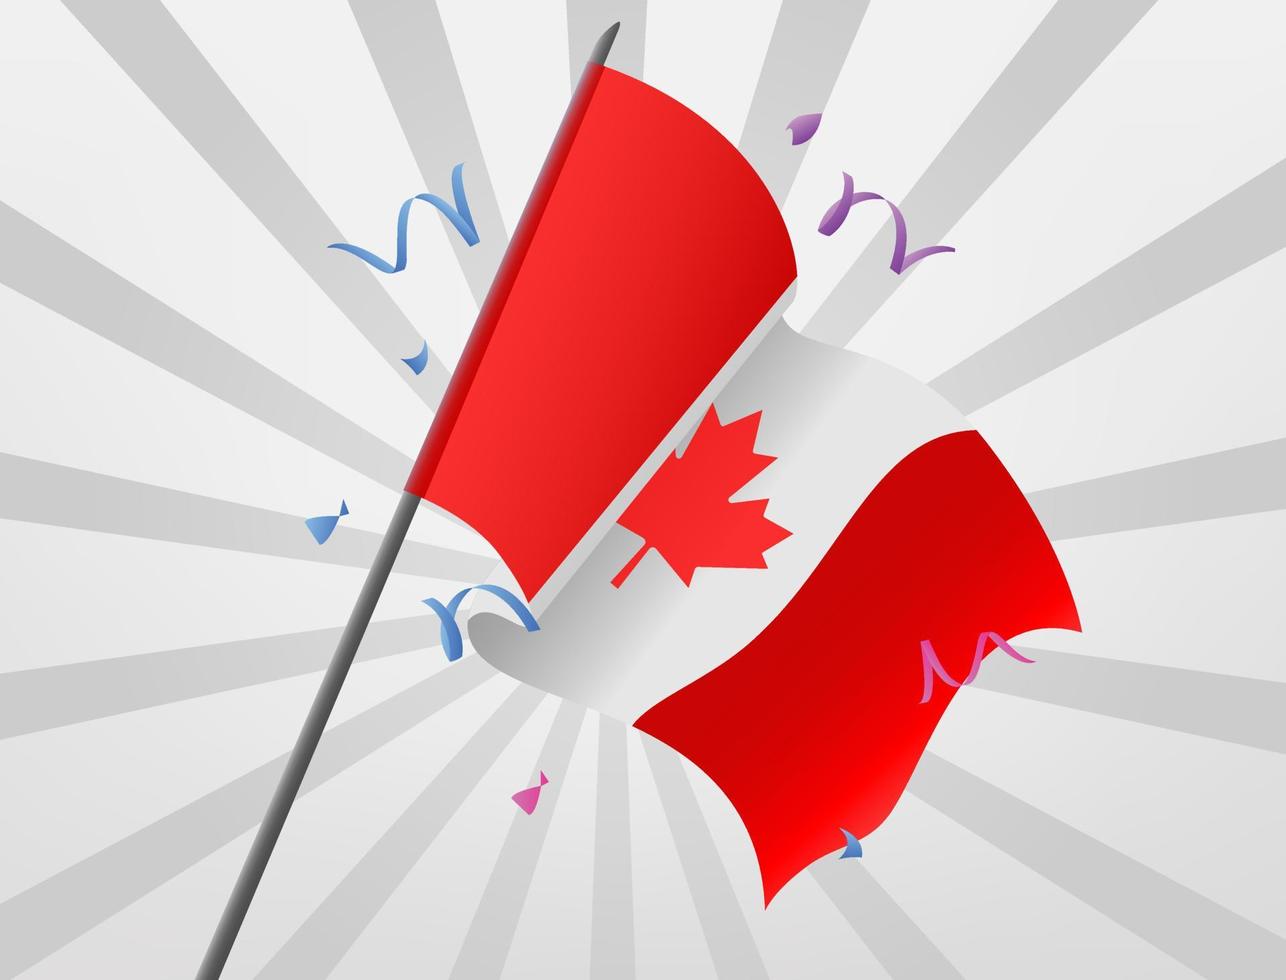 kanadensiska celebratoriska flaggor reser på höga höjder vektor